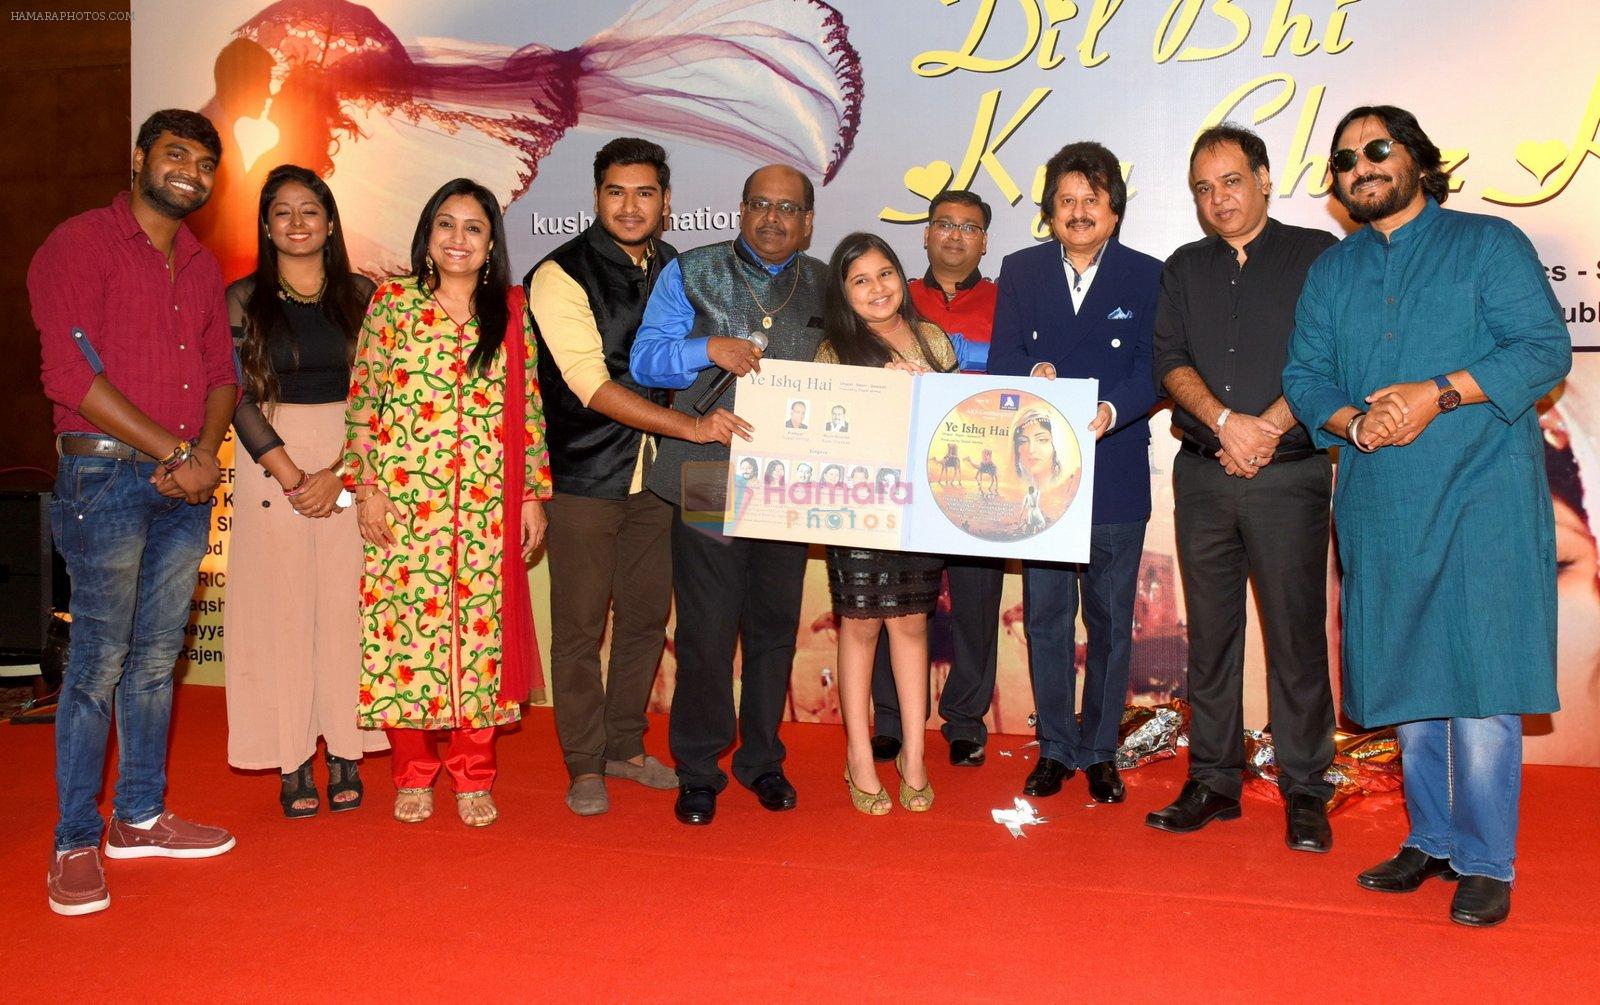 Pamela Jain, Ram Shankar, Pankaj Udhas, Gopal Verma, and Roop Kumar Rathod at Ye Ishq Hai album launch on 14th Sept 2016